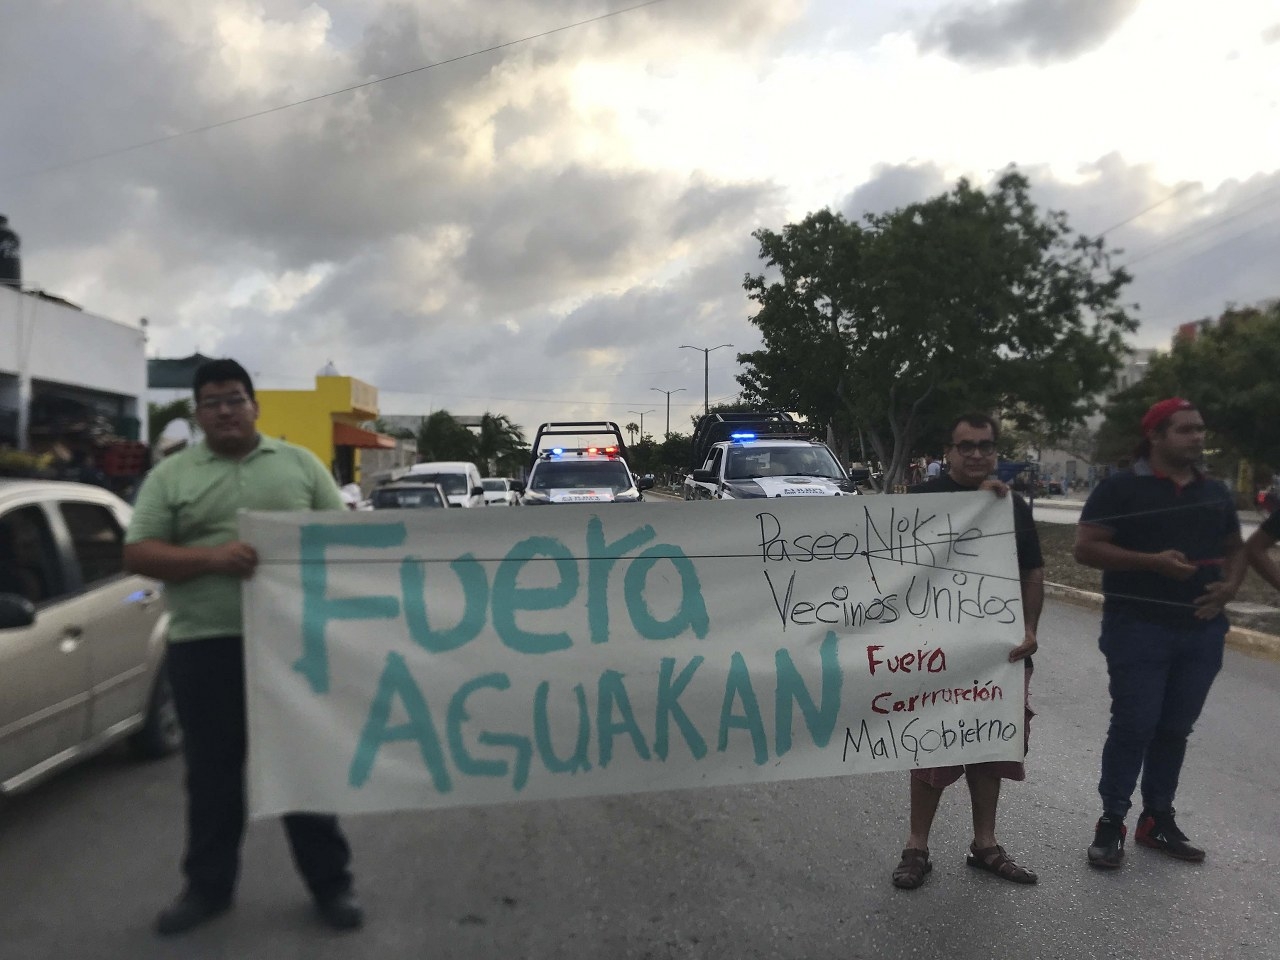 Activistas en Cancún y Playa del Carmen exigen quitarle la concesión a Aguakan